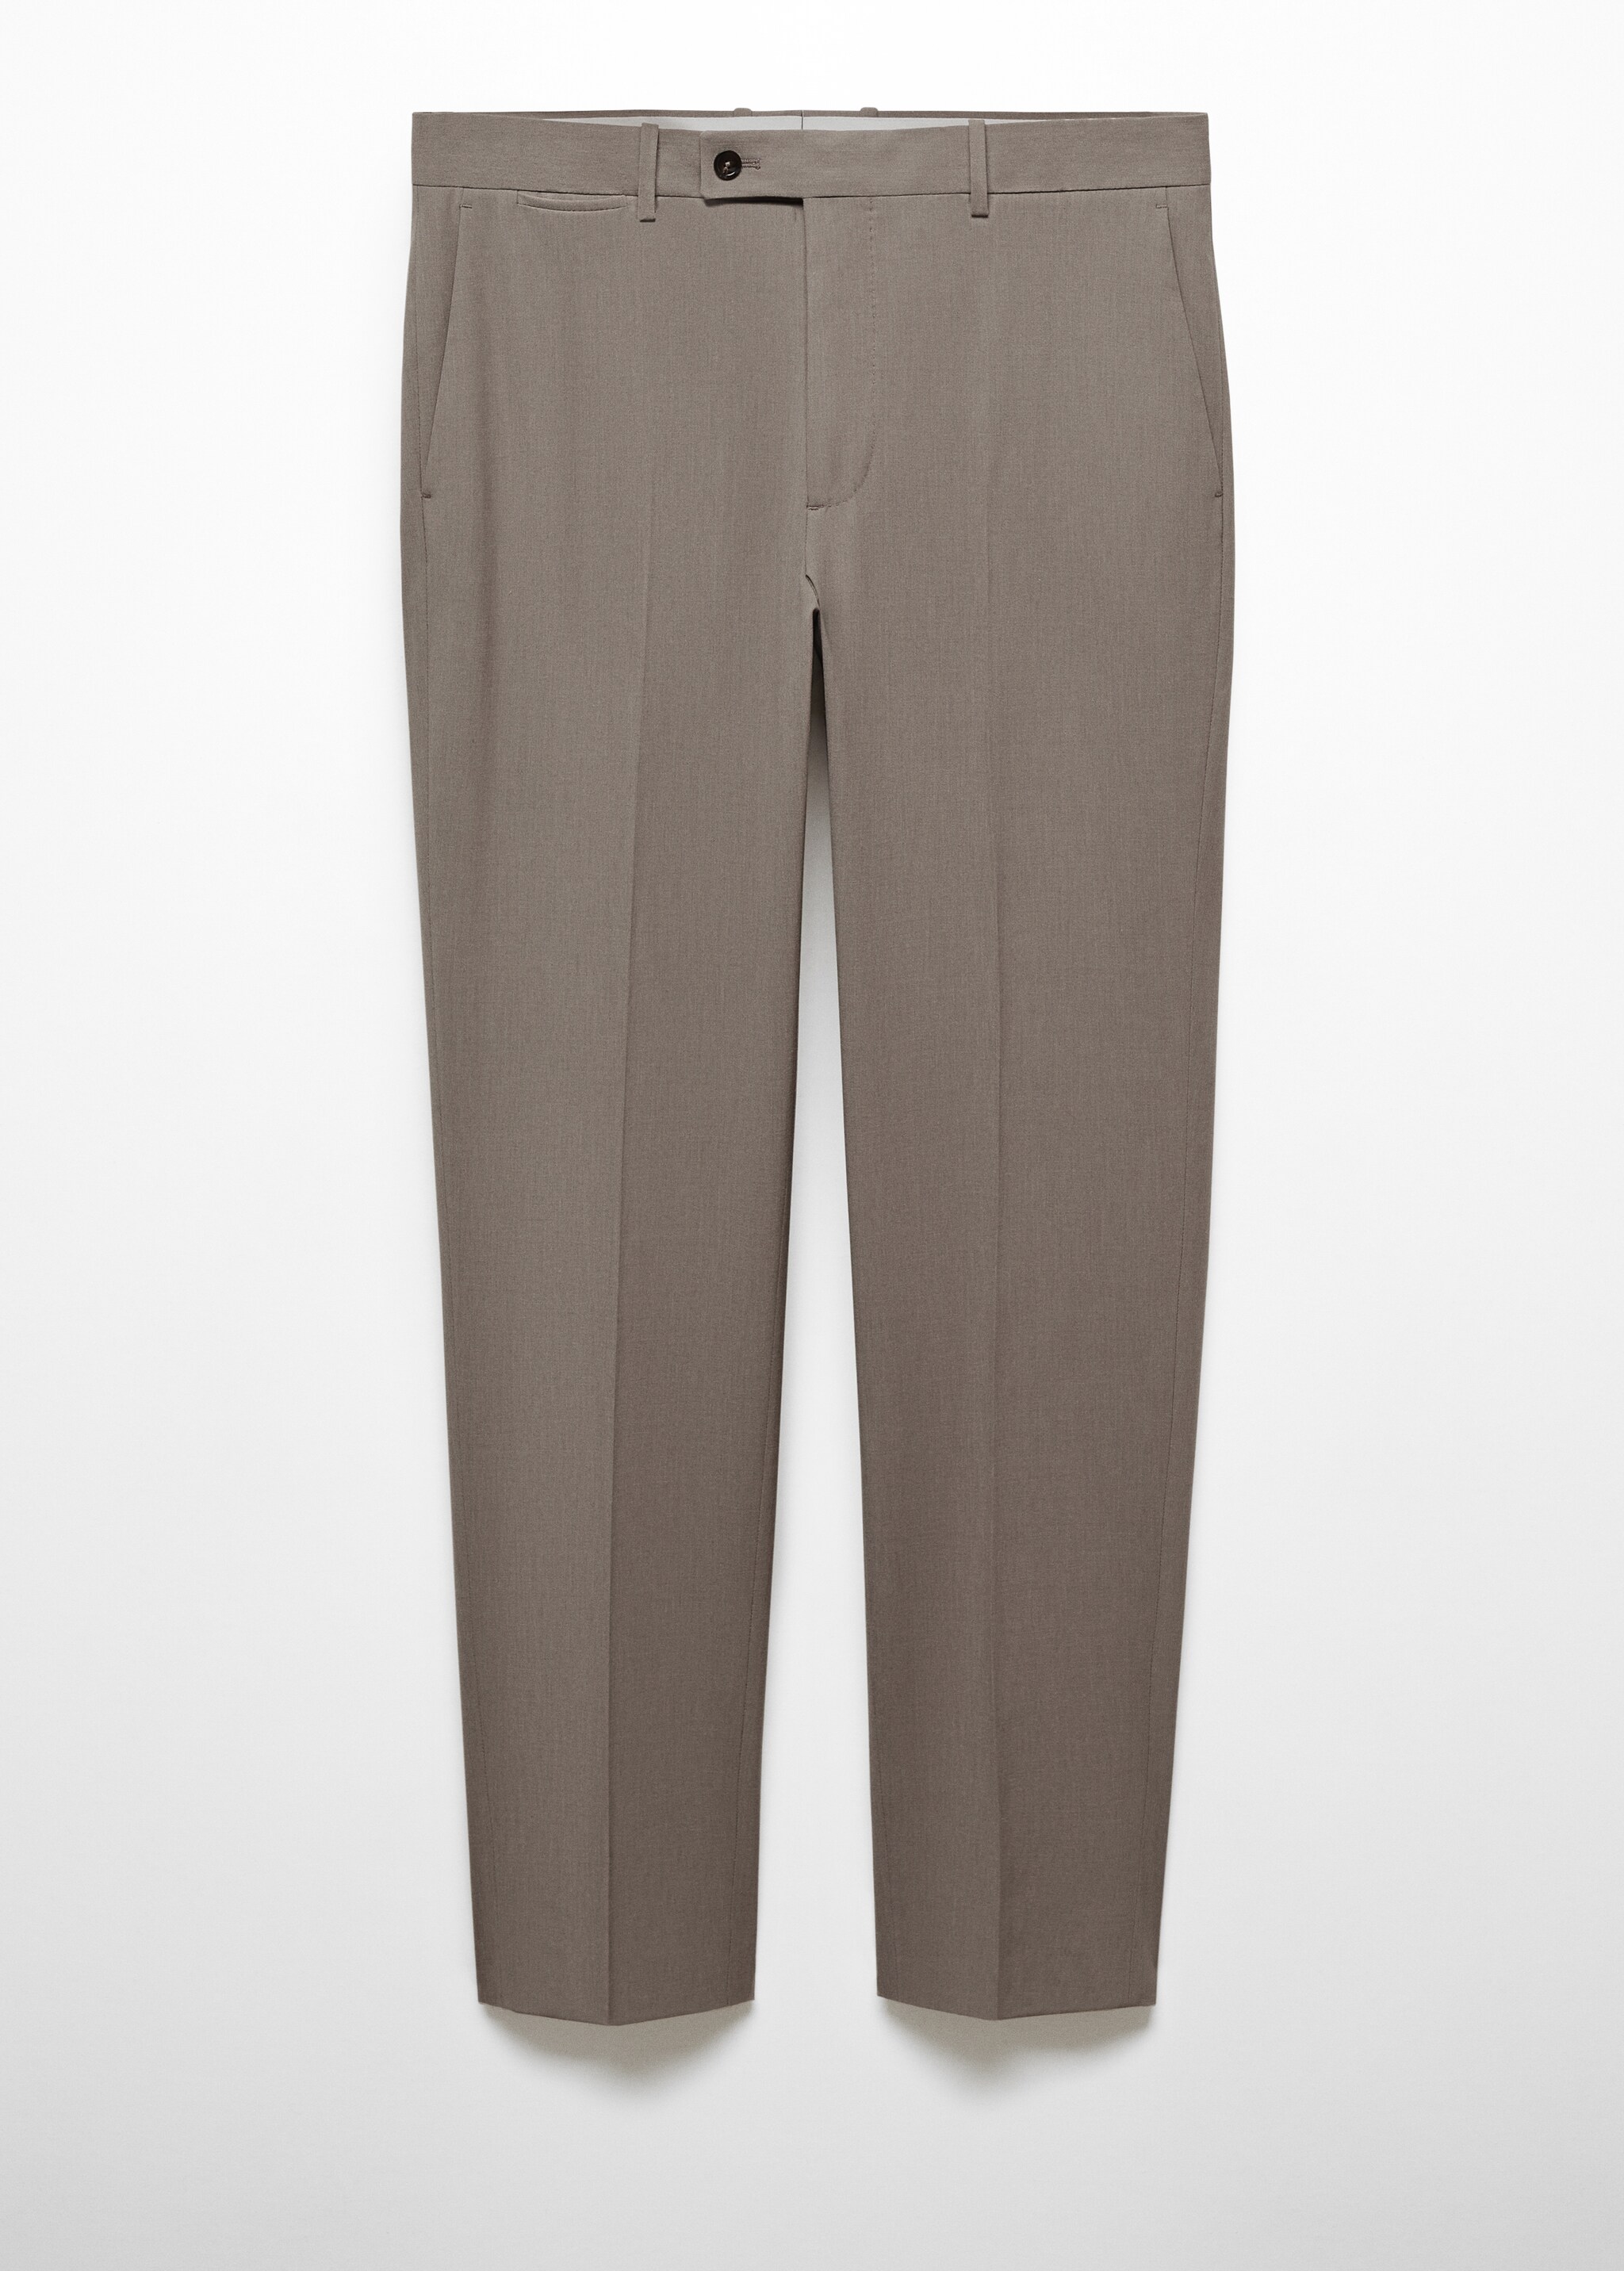 Костюмные брюки slim fit из холодной шерсти - Изделие без модели